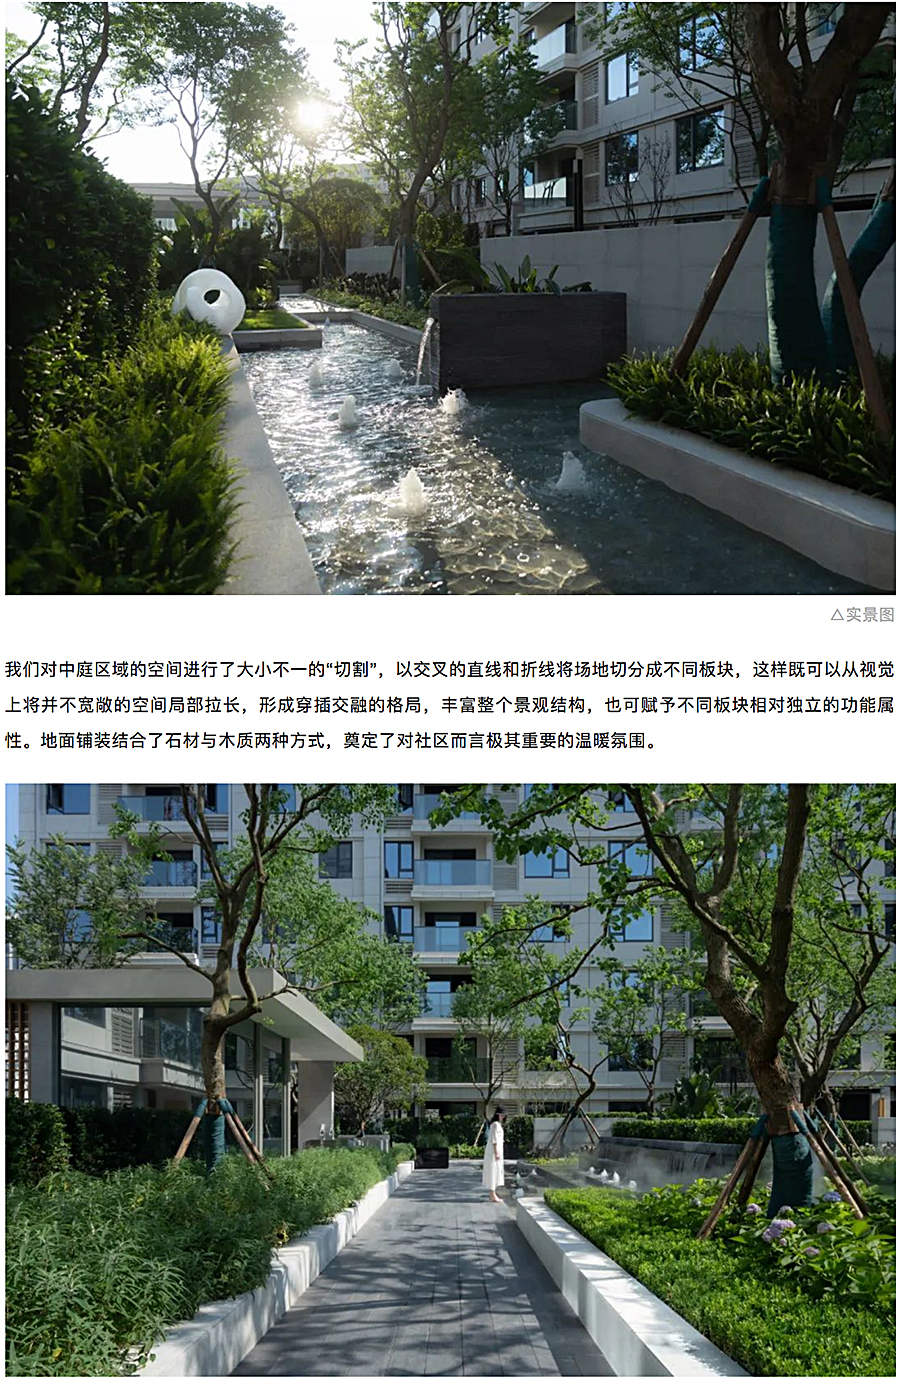 创新洋房社区-引领当代生活-_-重庆东原·月印万川_0011_图层-12.jpg